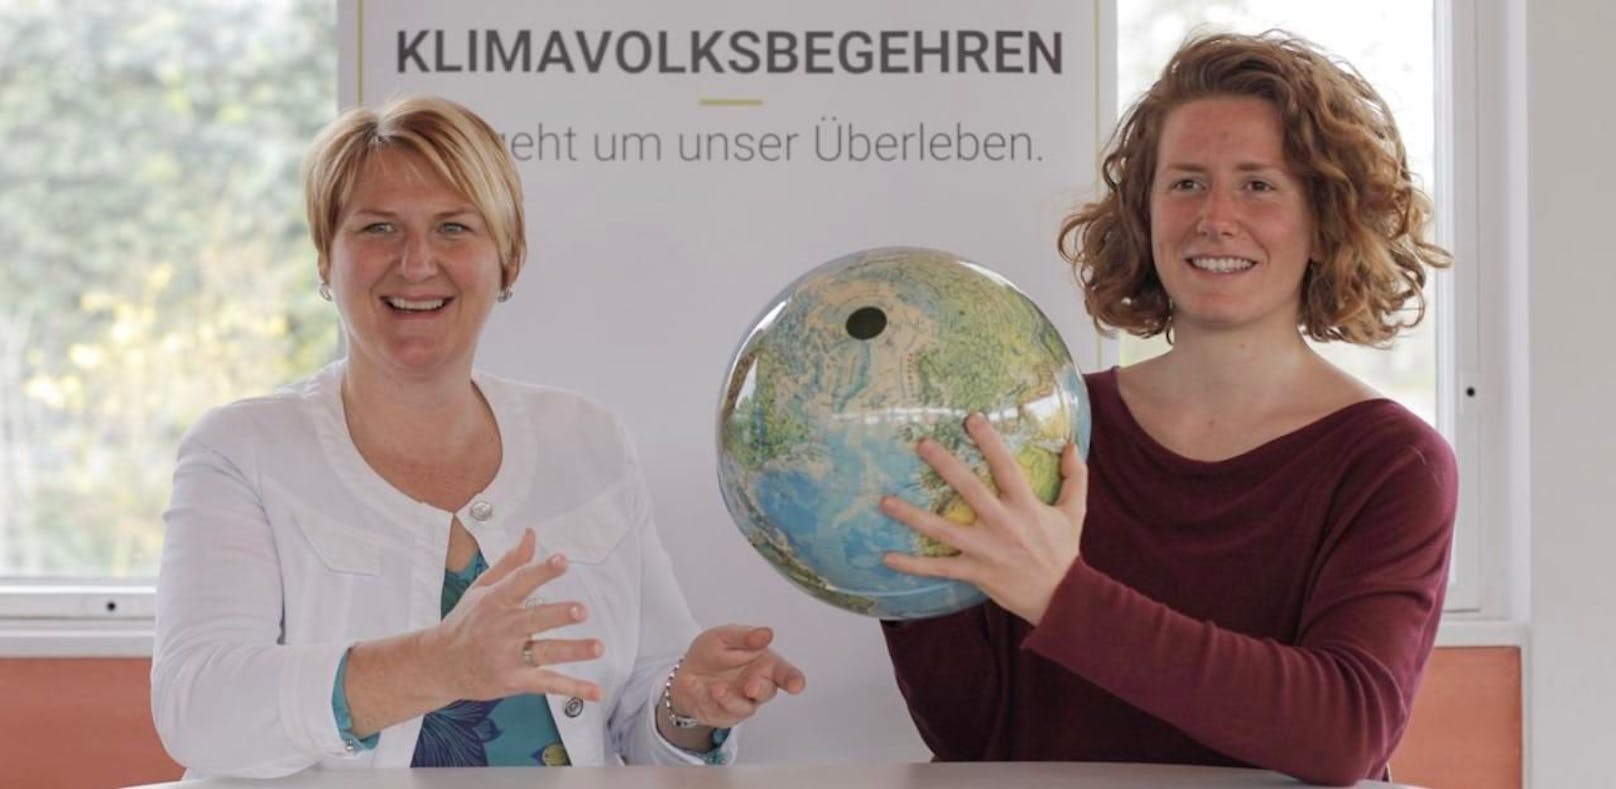 Die Initiatorin des Klimavolksbegehrens Helga Krismer (l.) übergibt die Leitung an ein Team um Katharina Rogenhofer (r.).